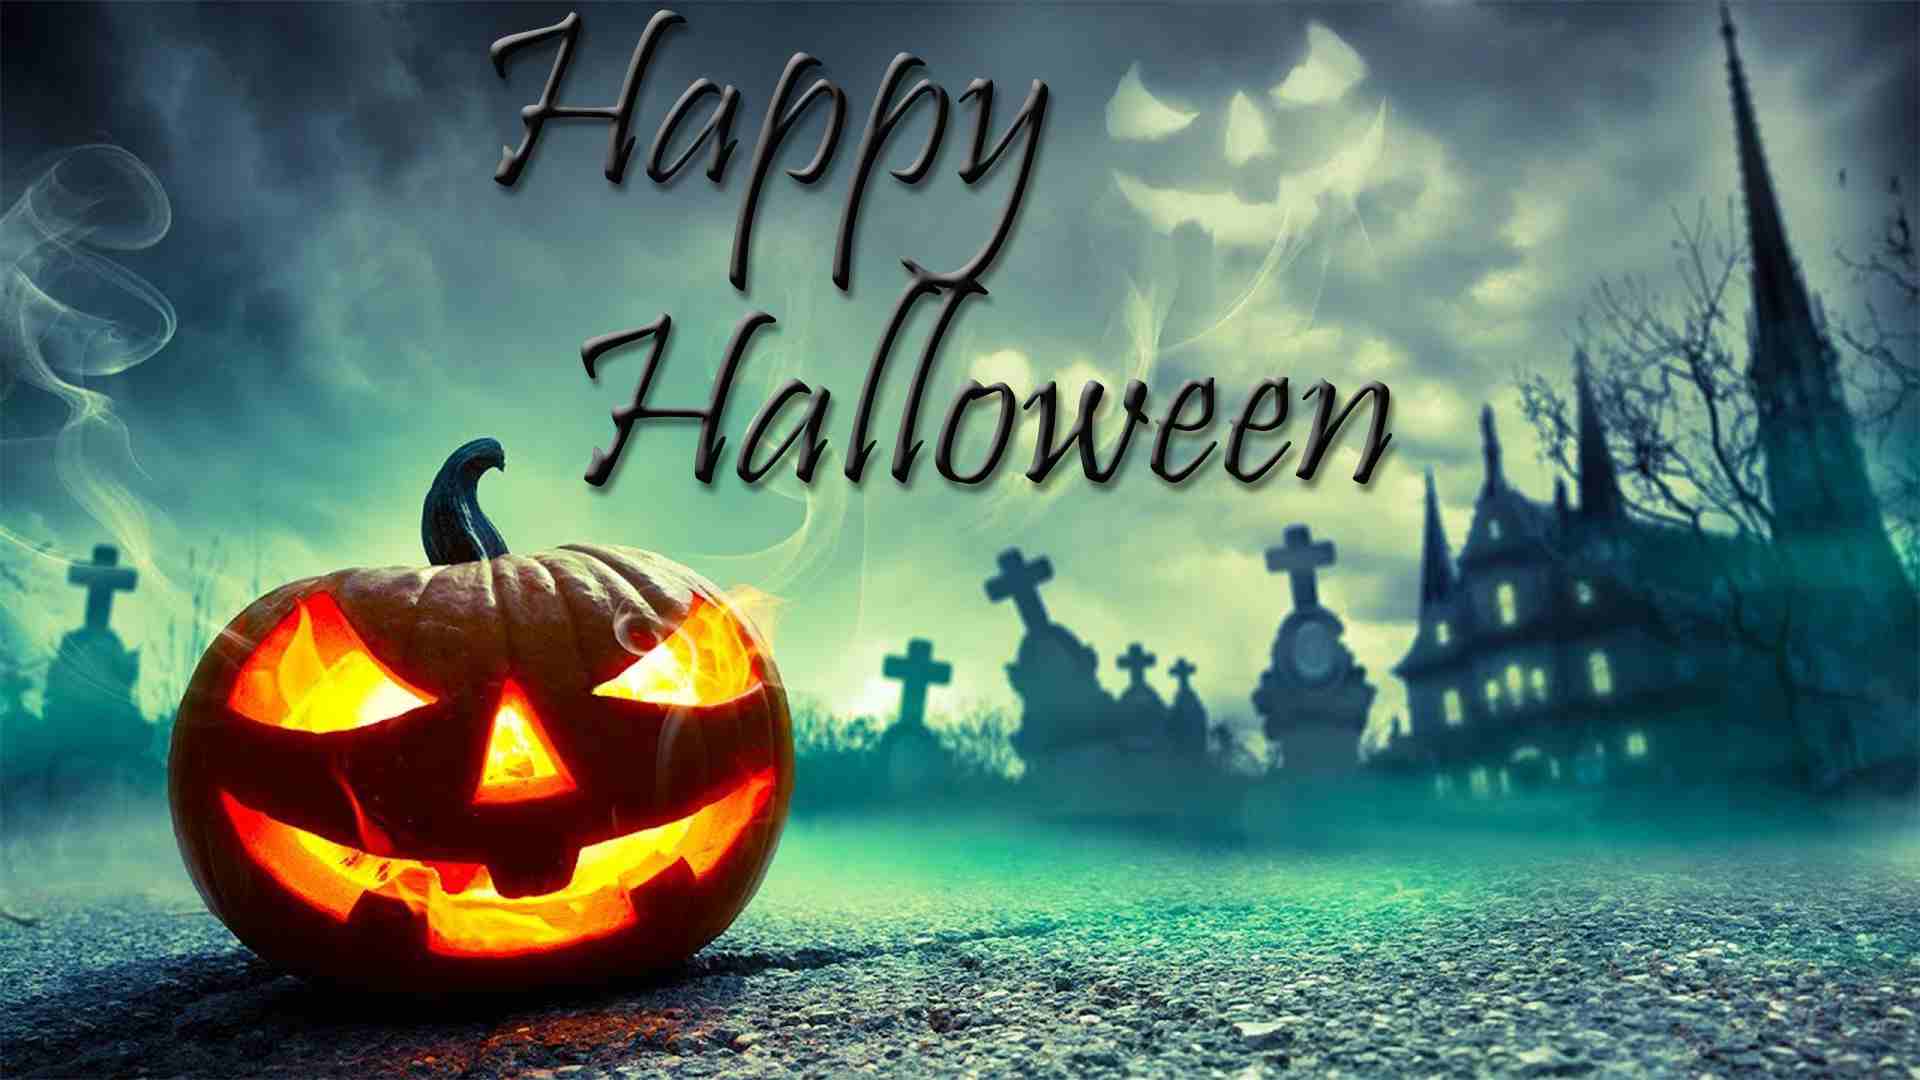 Happy Halloween Image Halloween Image GIF